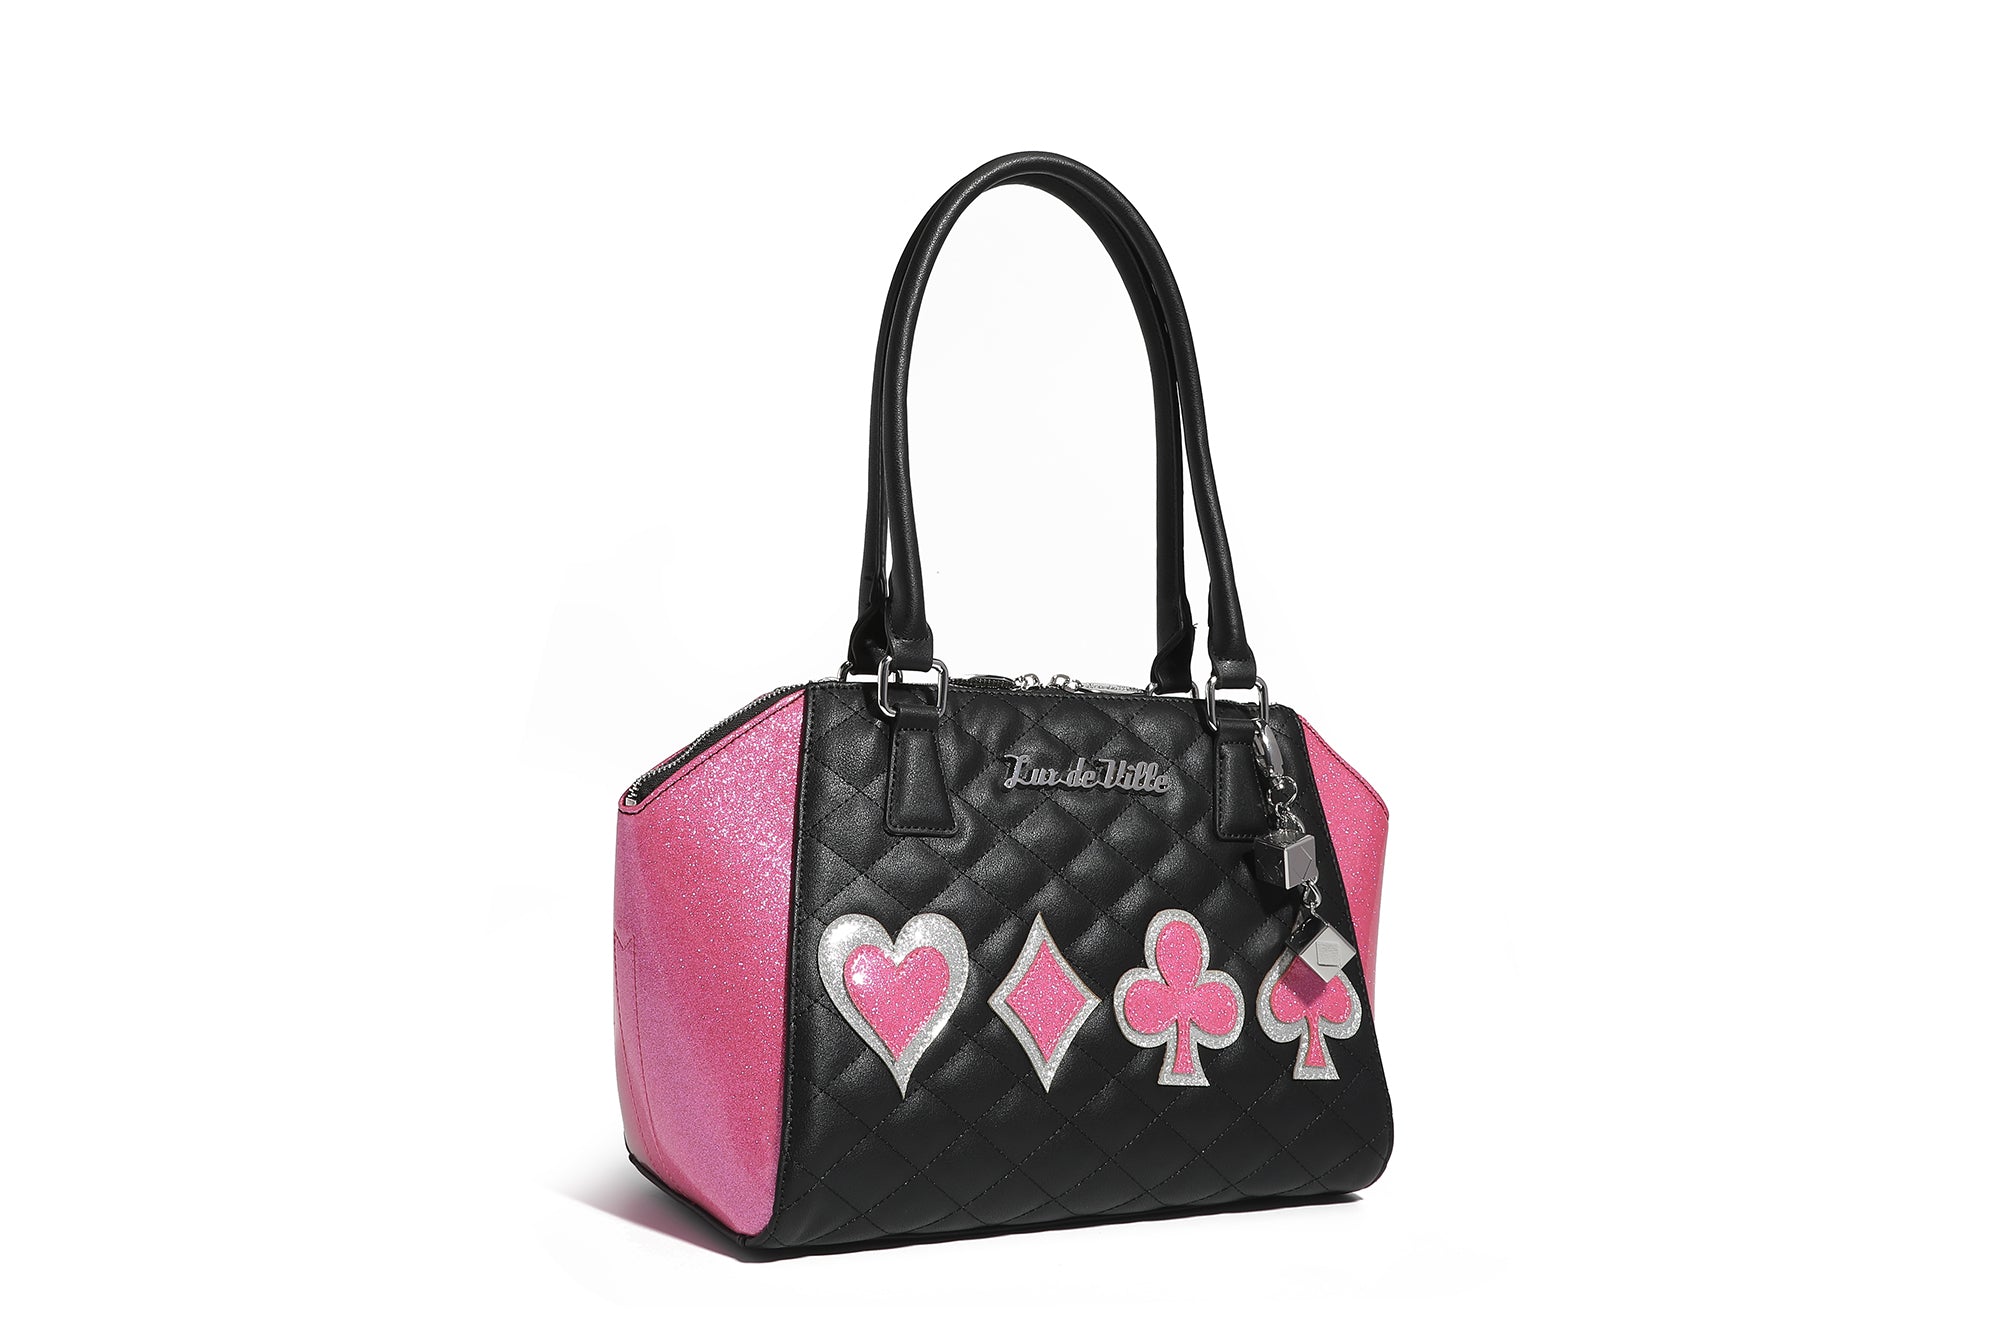 deux lux handbags for women